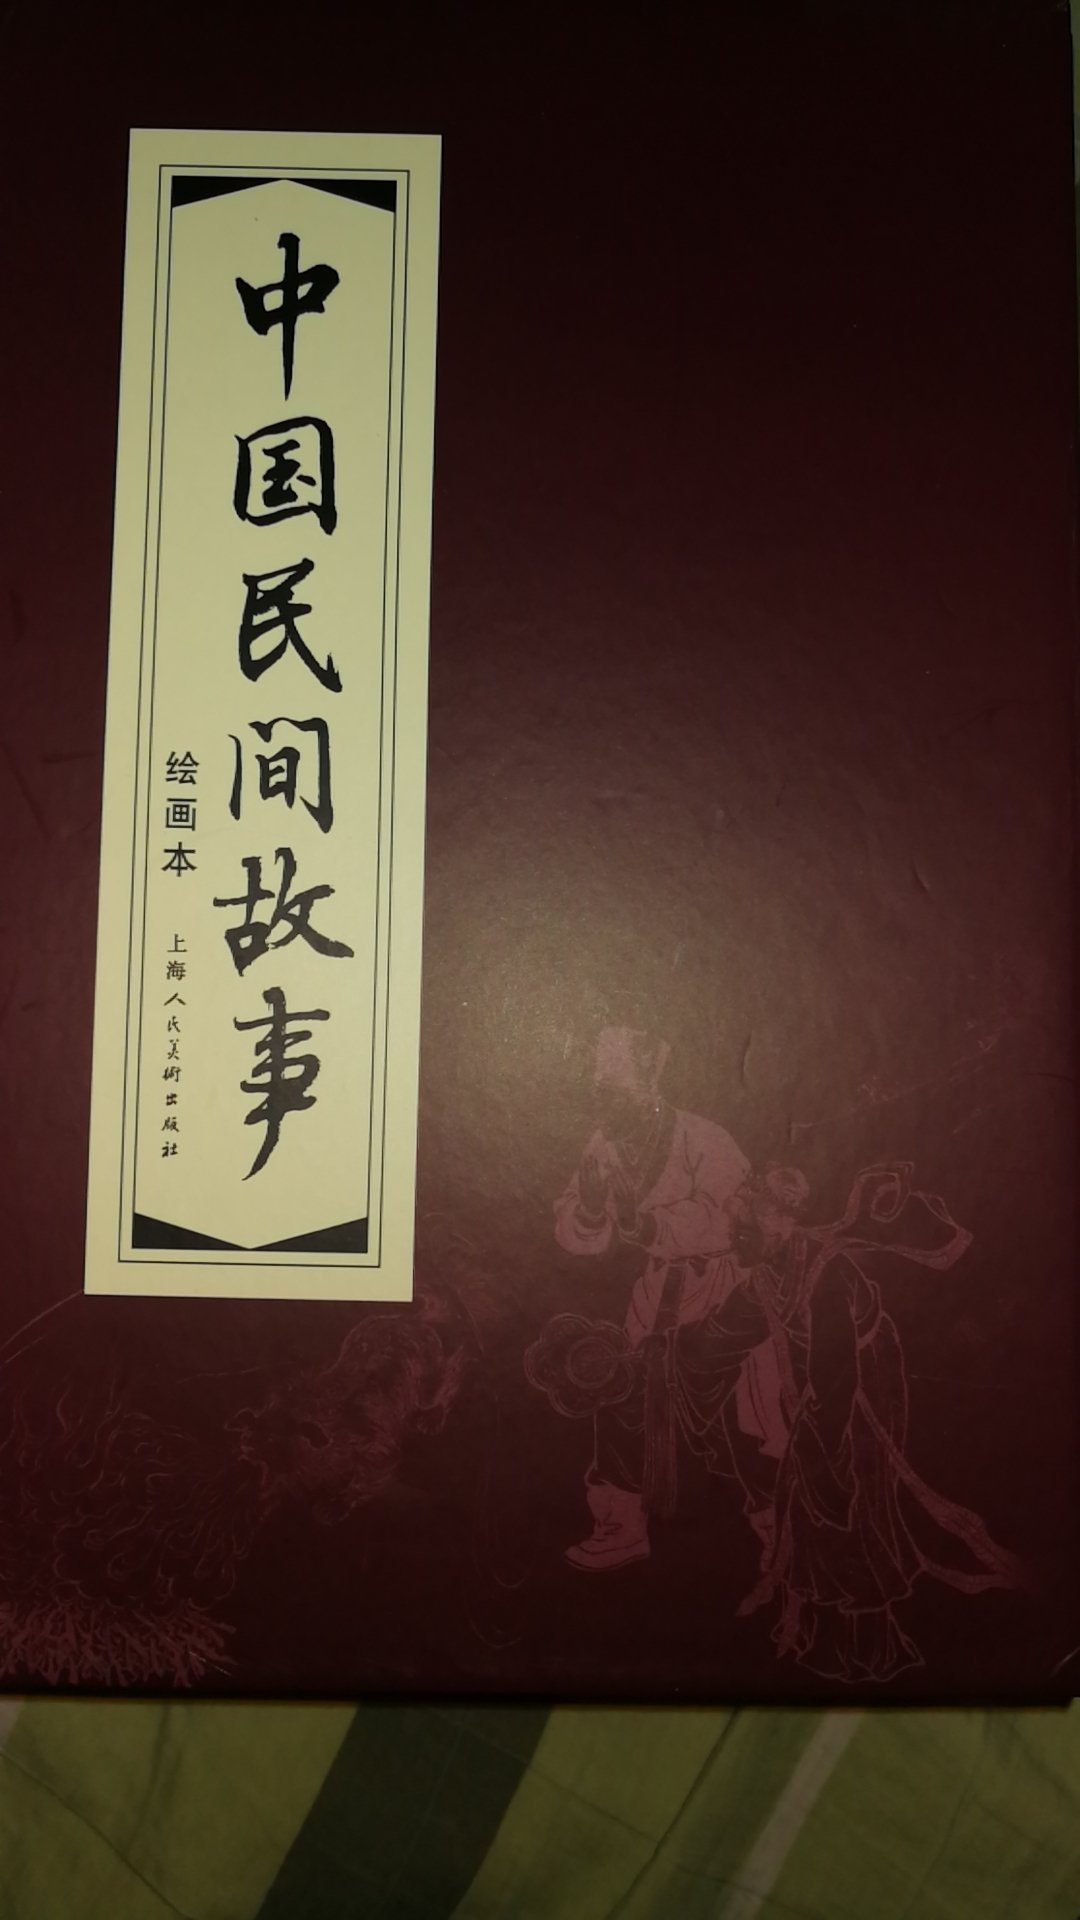 上海美术出版社的红函绝对属于价廉物美，值得购买。